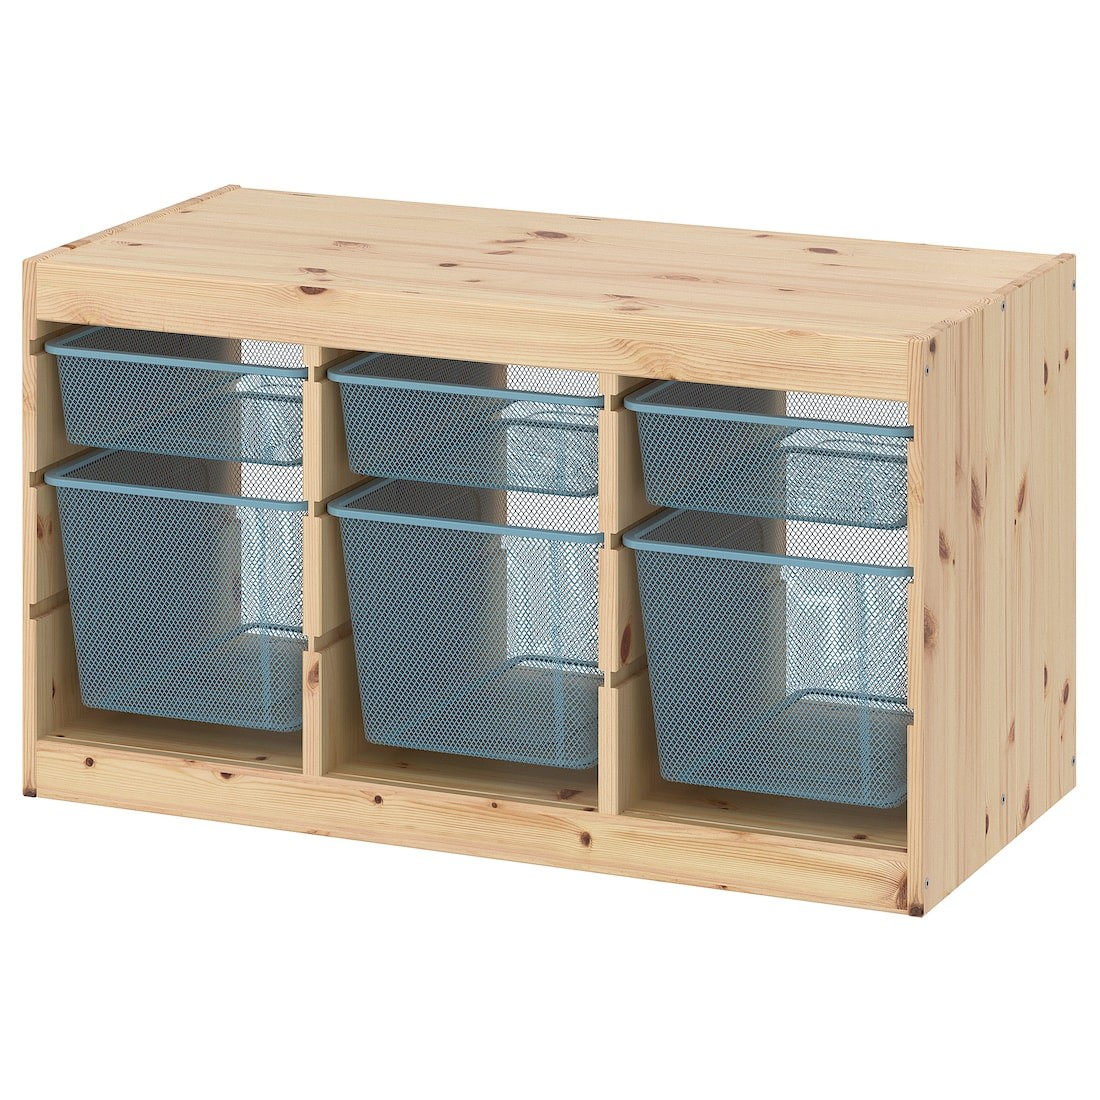 TROFAST Комбинация для хранения + контейнеры, светлая беленая сосна / серо-голубой, 93x44x52 см